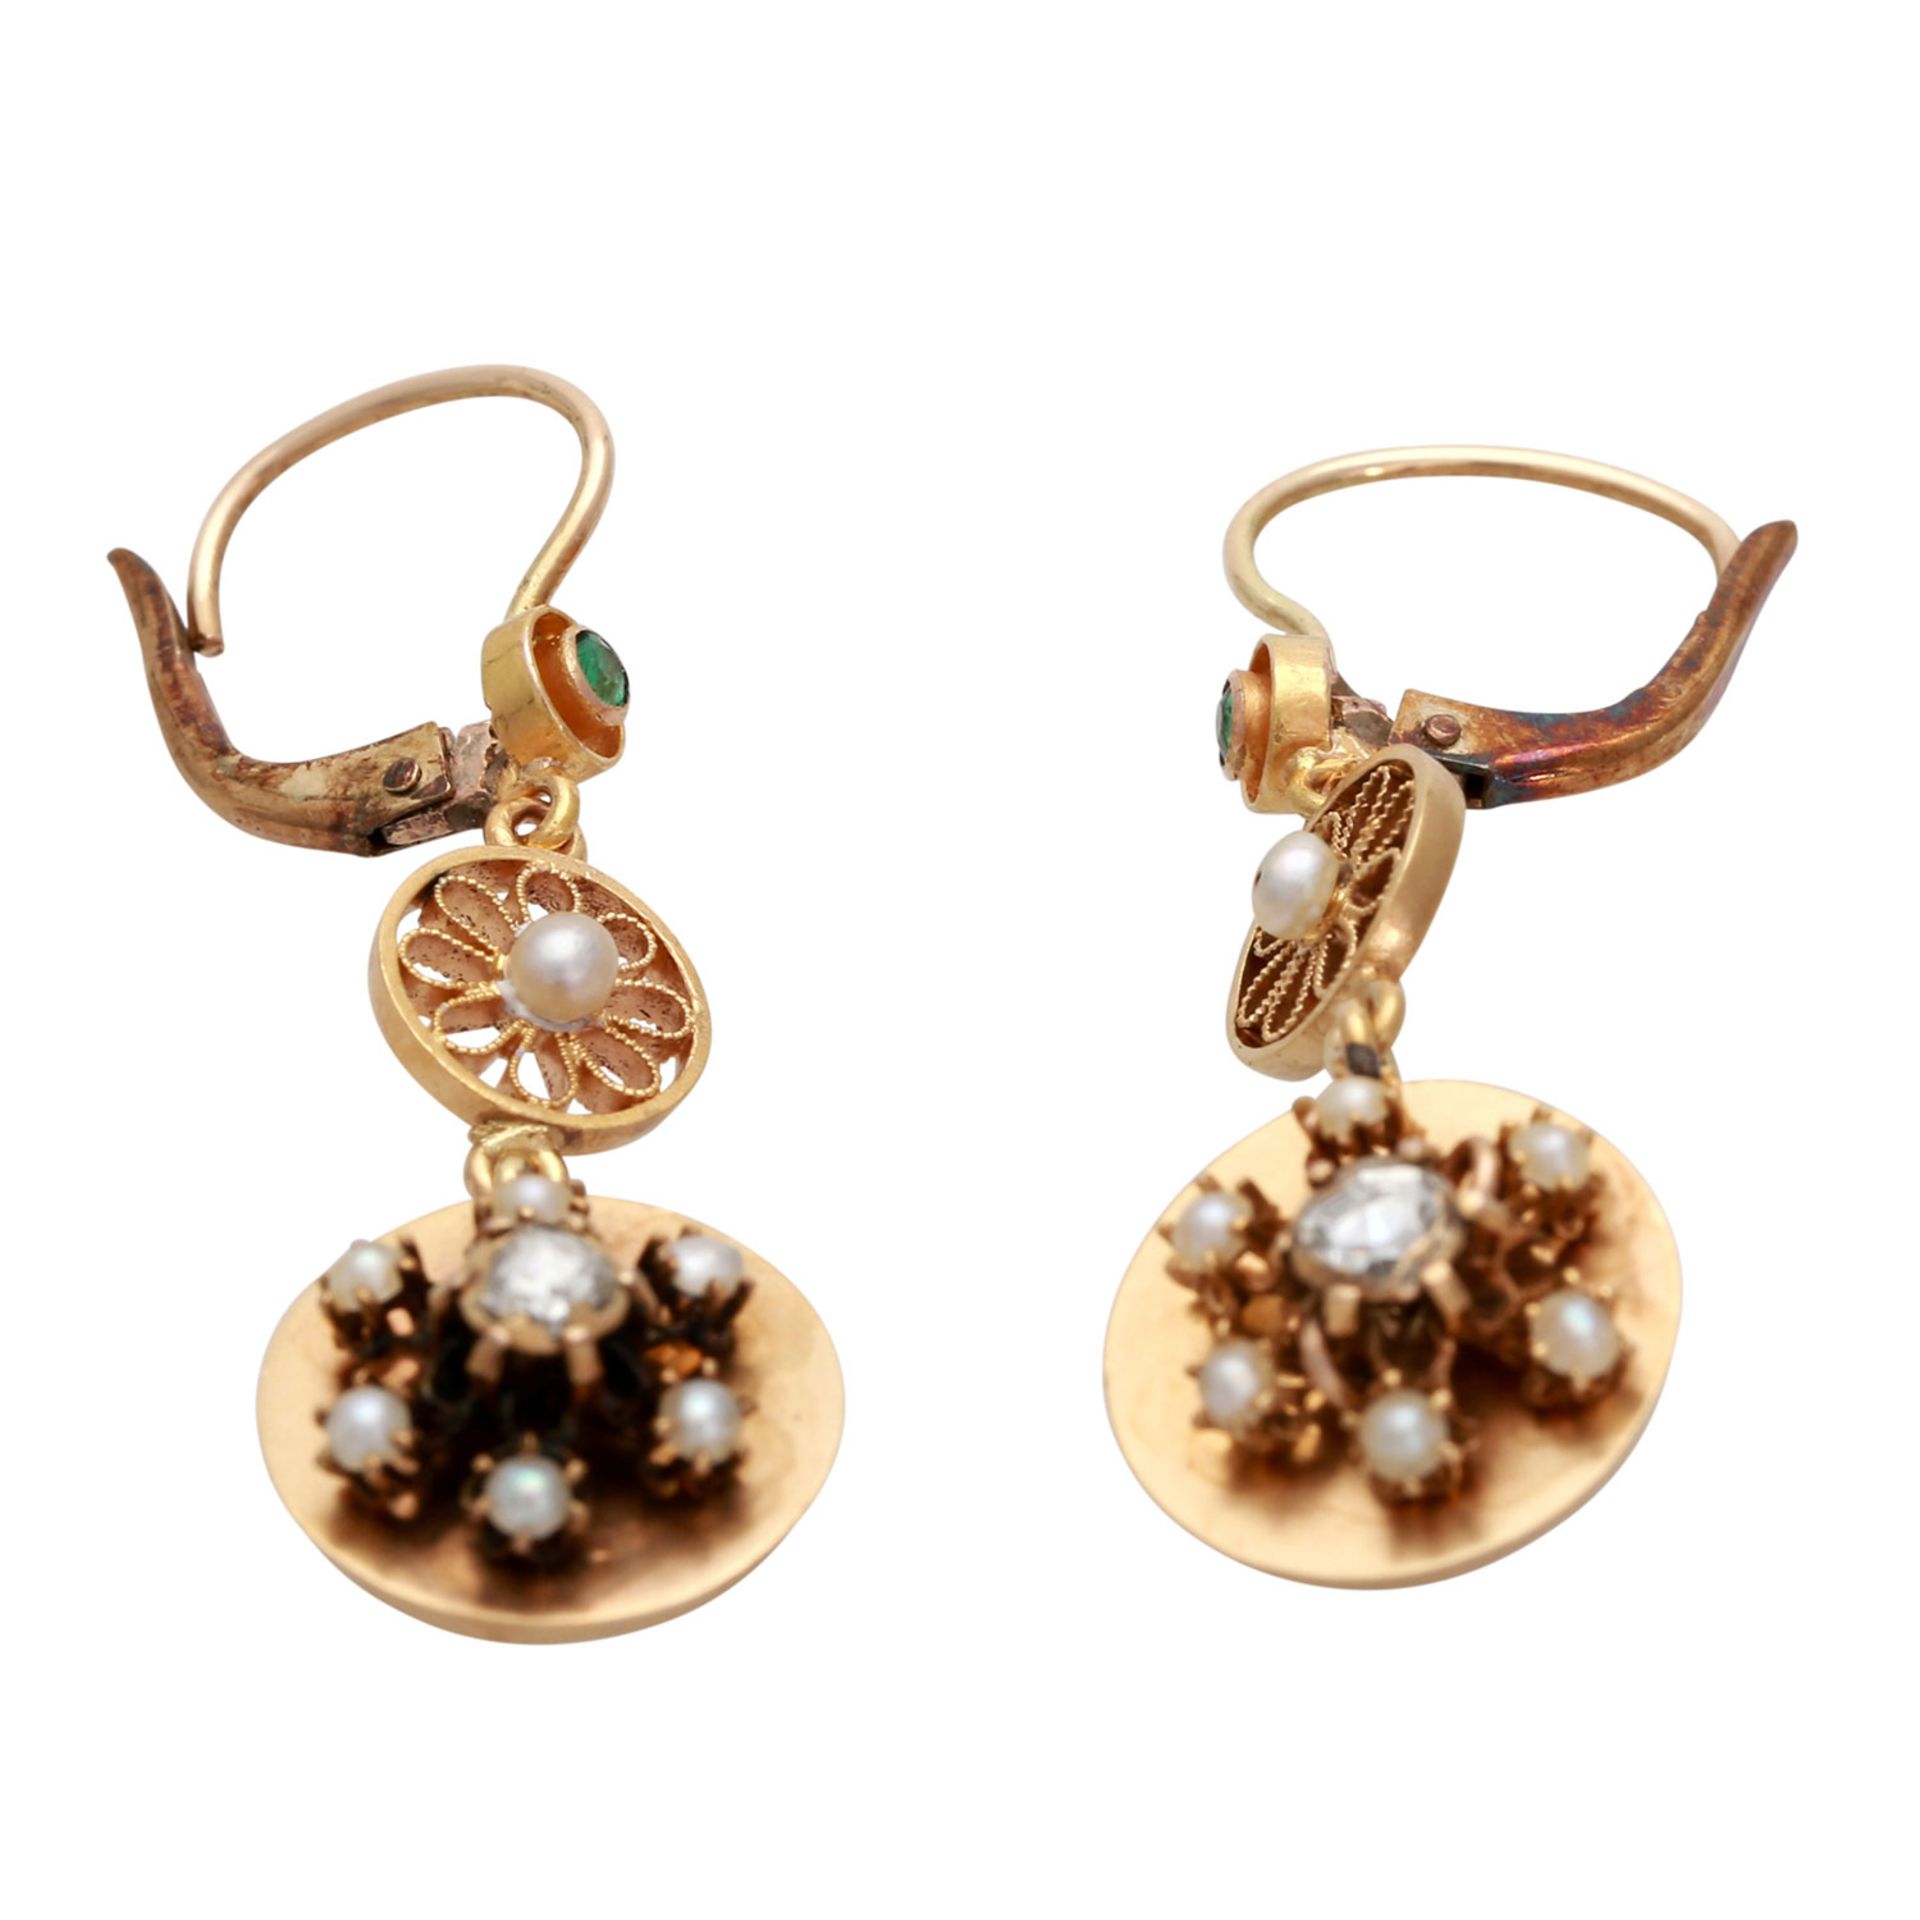 Ohrhänger mit je 1 Diamantrose, 1 Smaragd und 1 Perle, sowie 6 Halbperlen, Roségold 14K, filigrane - Bild 2 aus 4